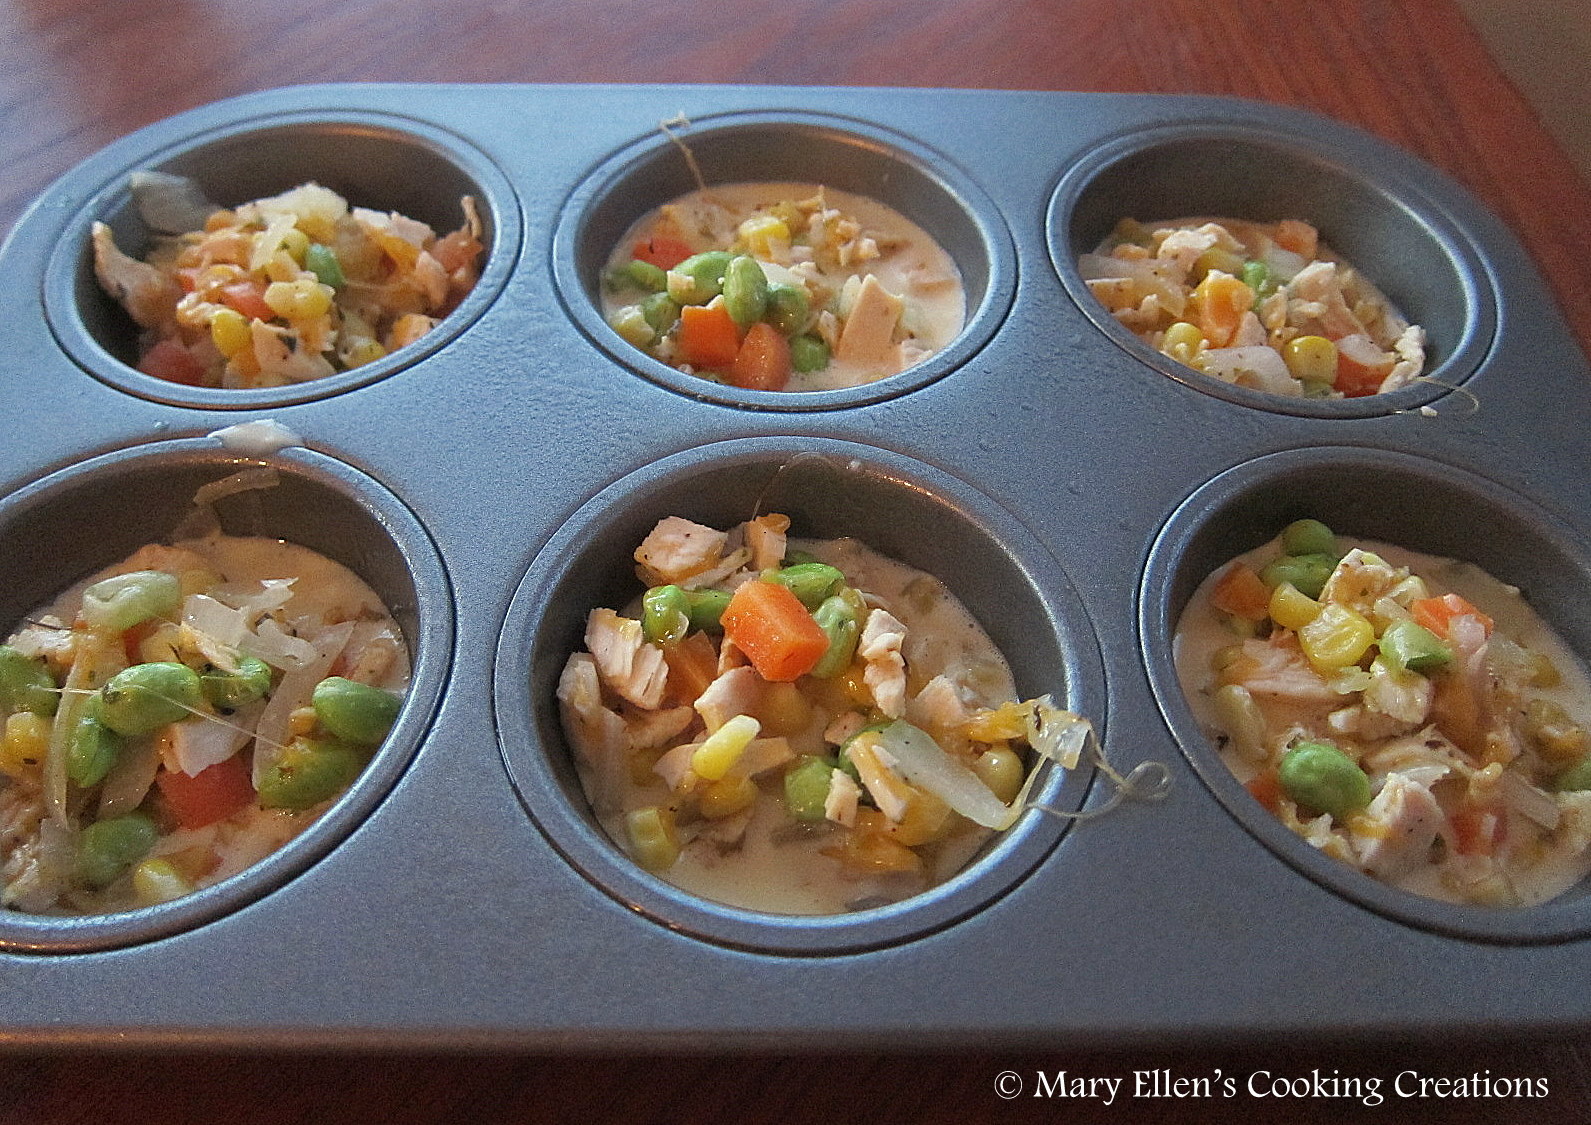 Mary Ellen's Cooking Creations: Mini Chicken & Biscuit Dinner